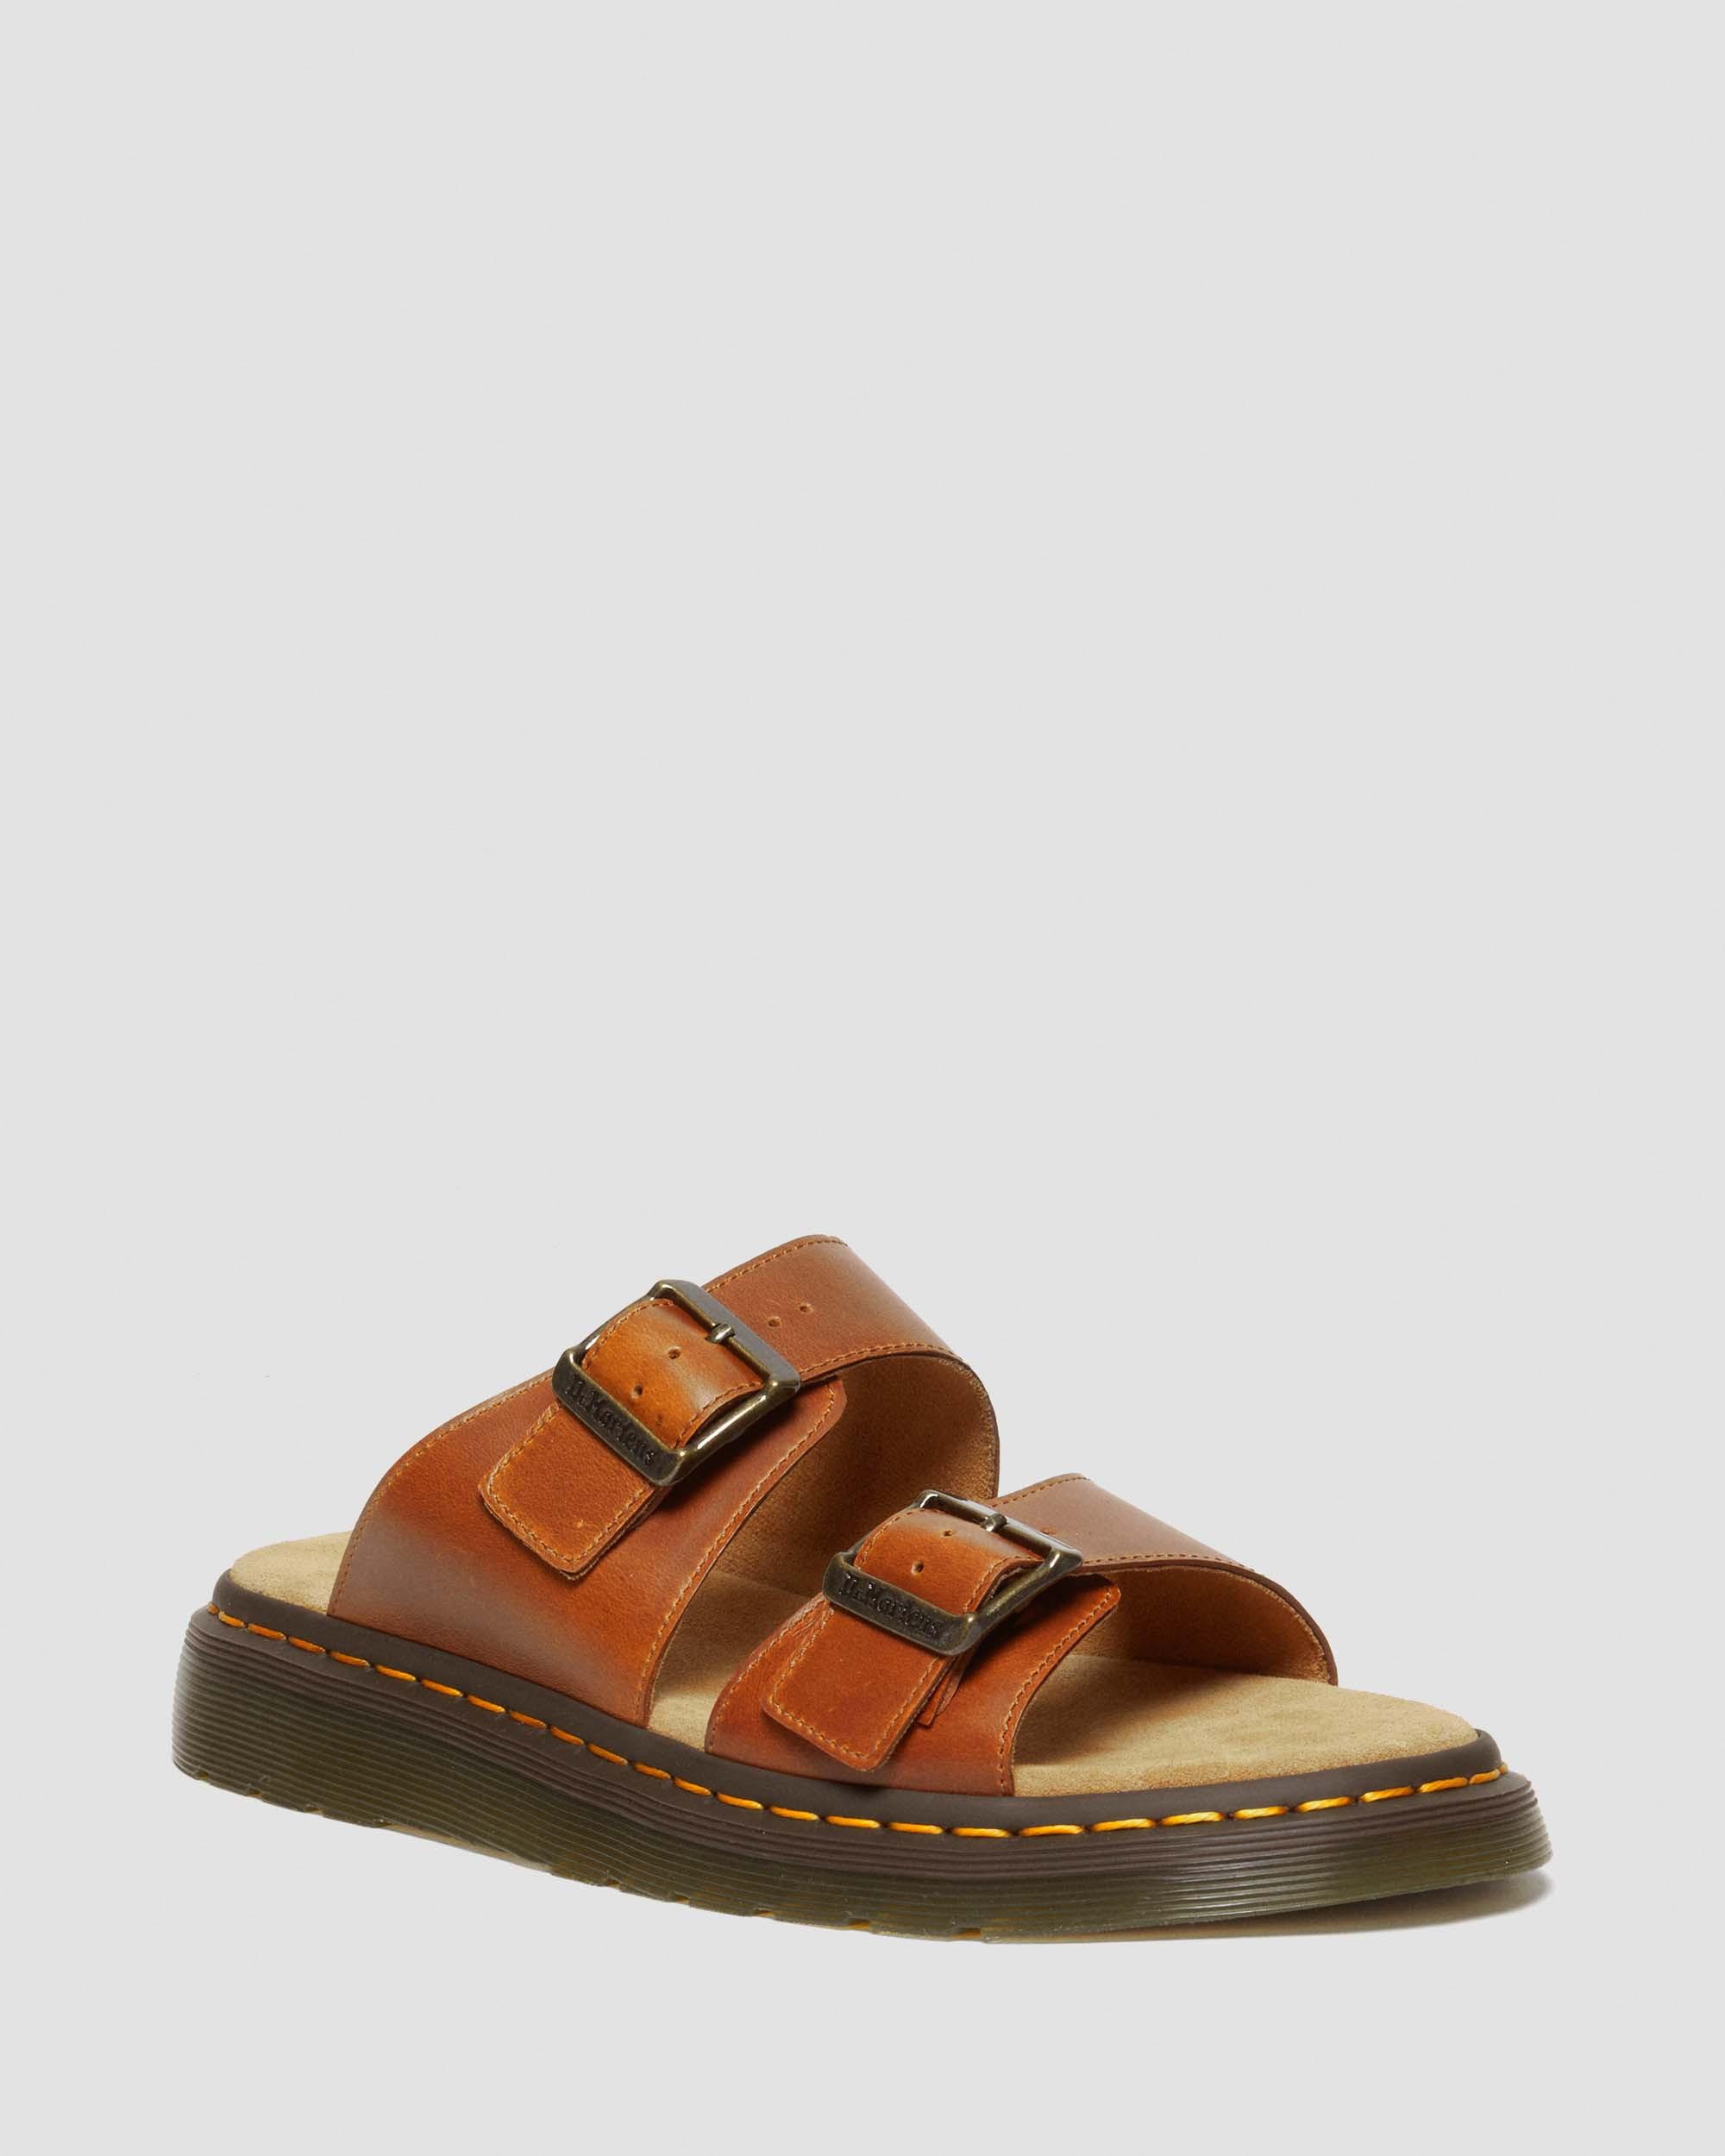 Josef Leather Buckle Slide Sandals in Oak